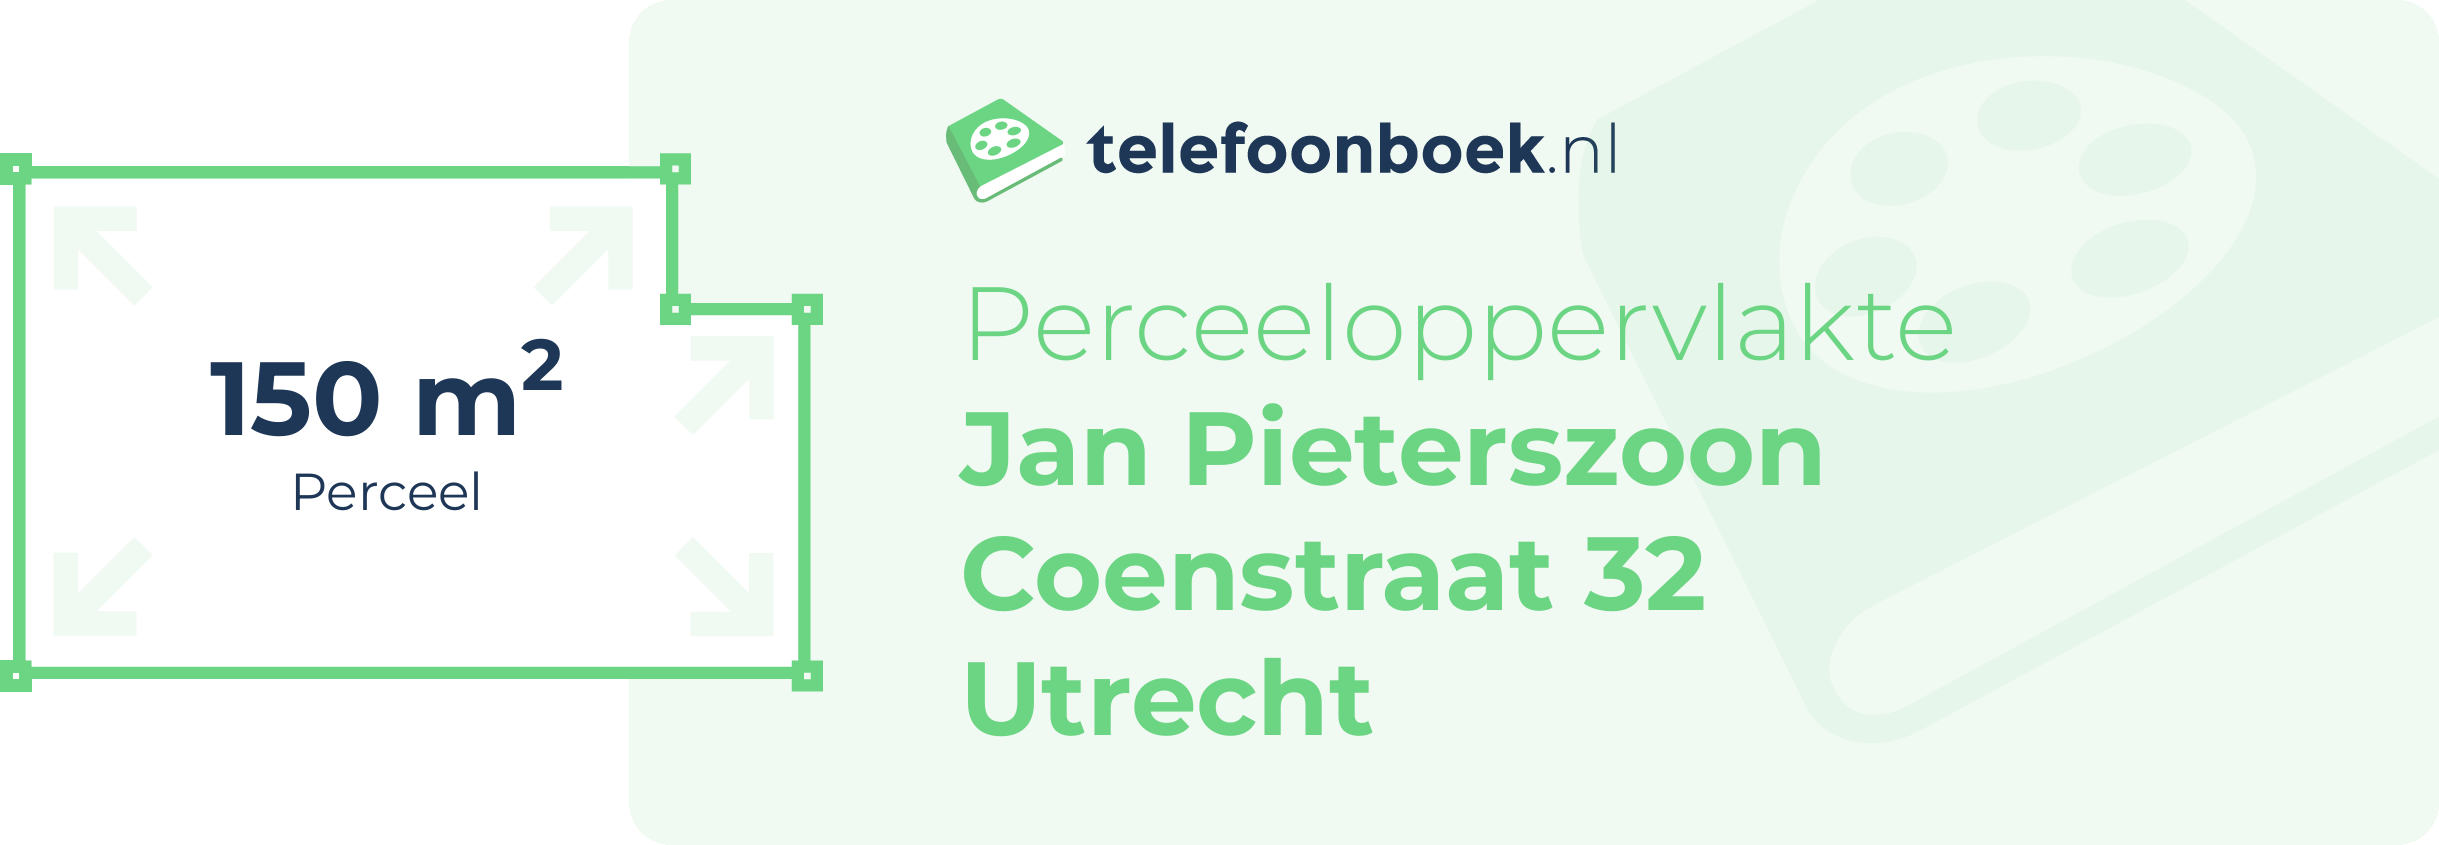 Perceeloppervlakte Jan Pieterszoon Coenstraat 32 Utrecht